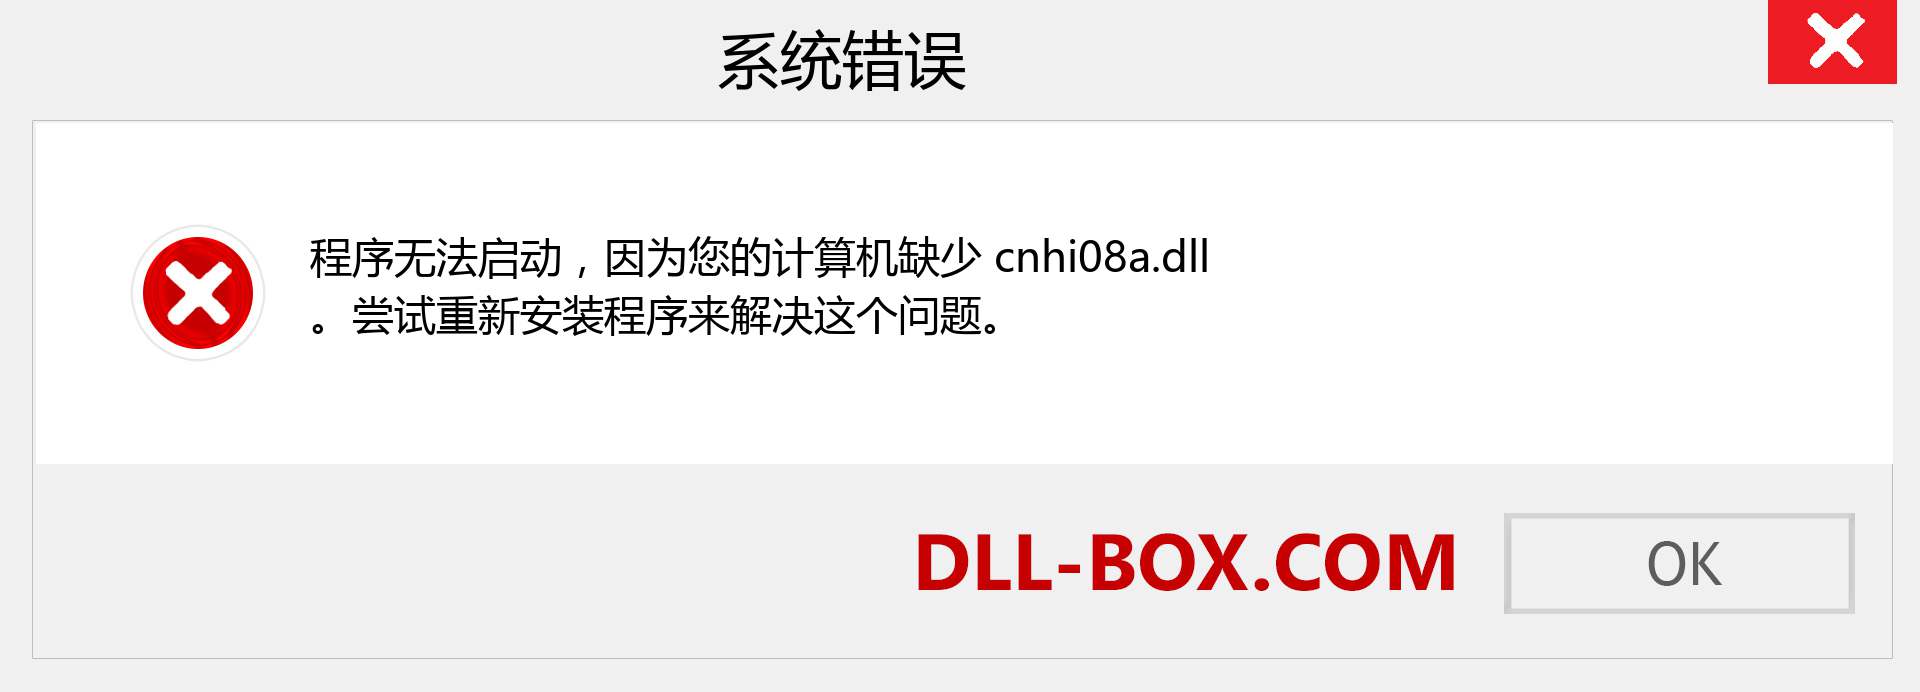 cnhi08a.dll 文件丢失？。 适用于 Windows 7、8、10 的下载 - 修复 Windows、照片、图像上的 cnhi08a dll 丢失错误